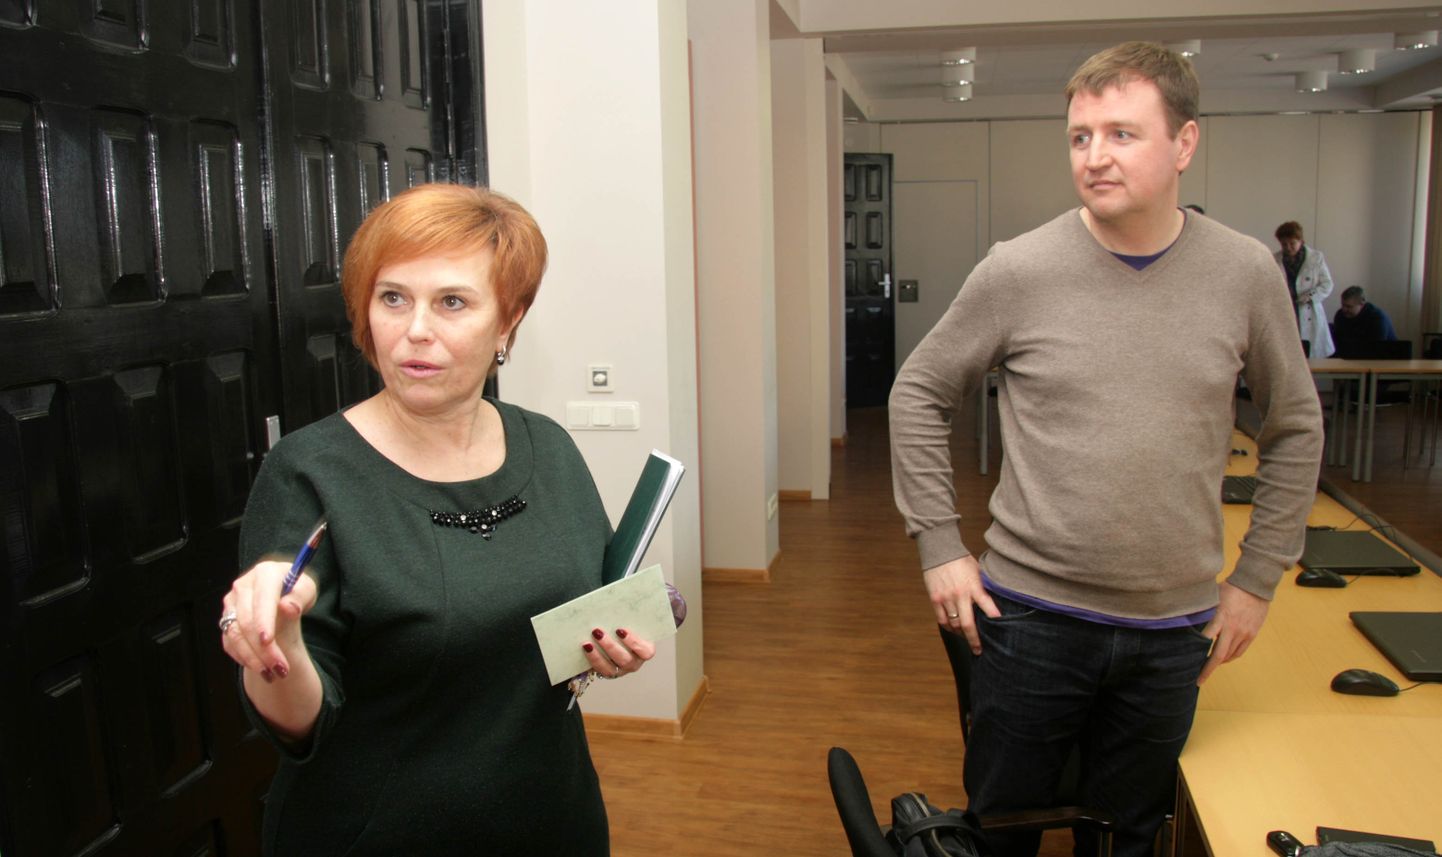 Эдуард Одинец предлагает уменьшить зарплату председателя горсобрания Рийны Ивановой примерно в четыре раза и направить освободившиеся деньги в народный бюджет.